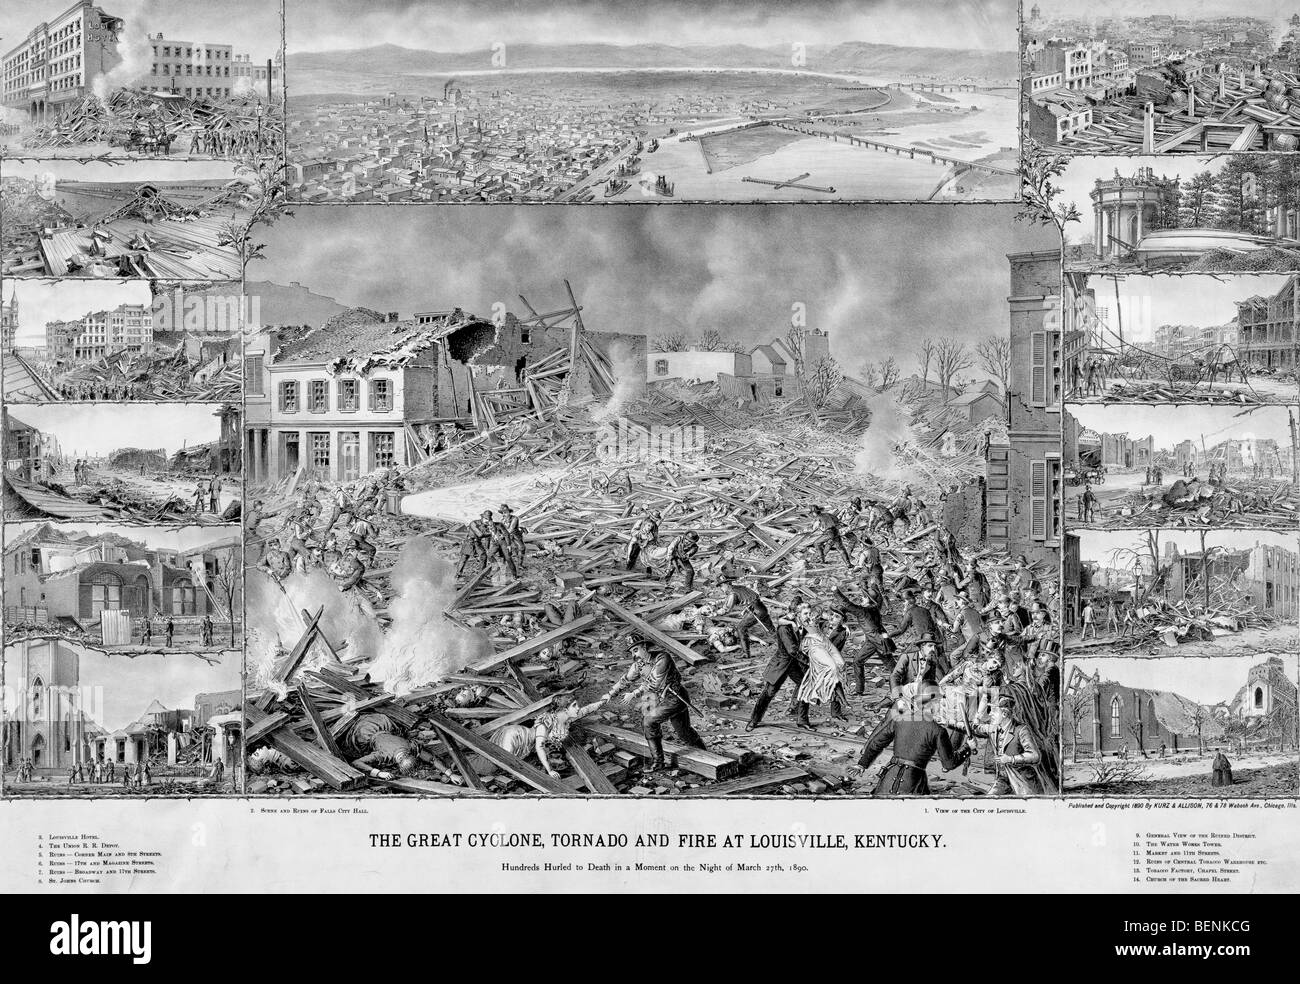 La grande tornade, Cyclone et l'Incendie à Louisville, Kentucky, le 27 mars 1890 Banque D'Images